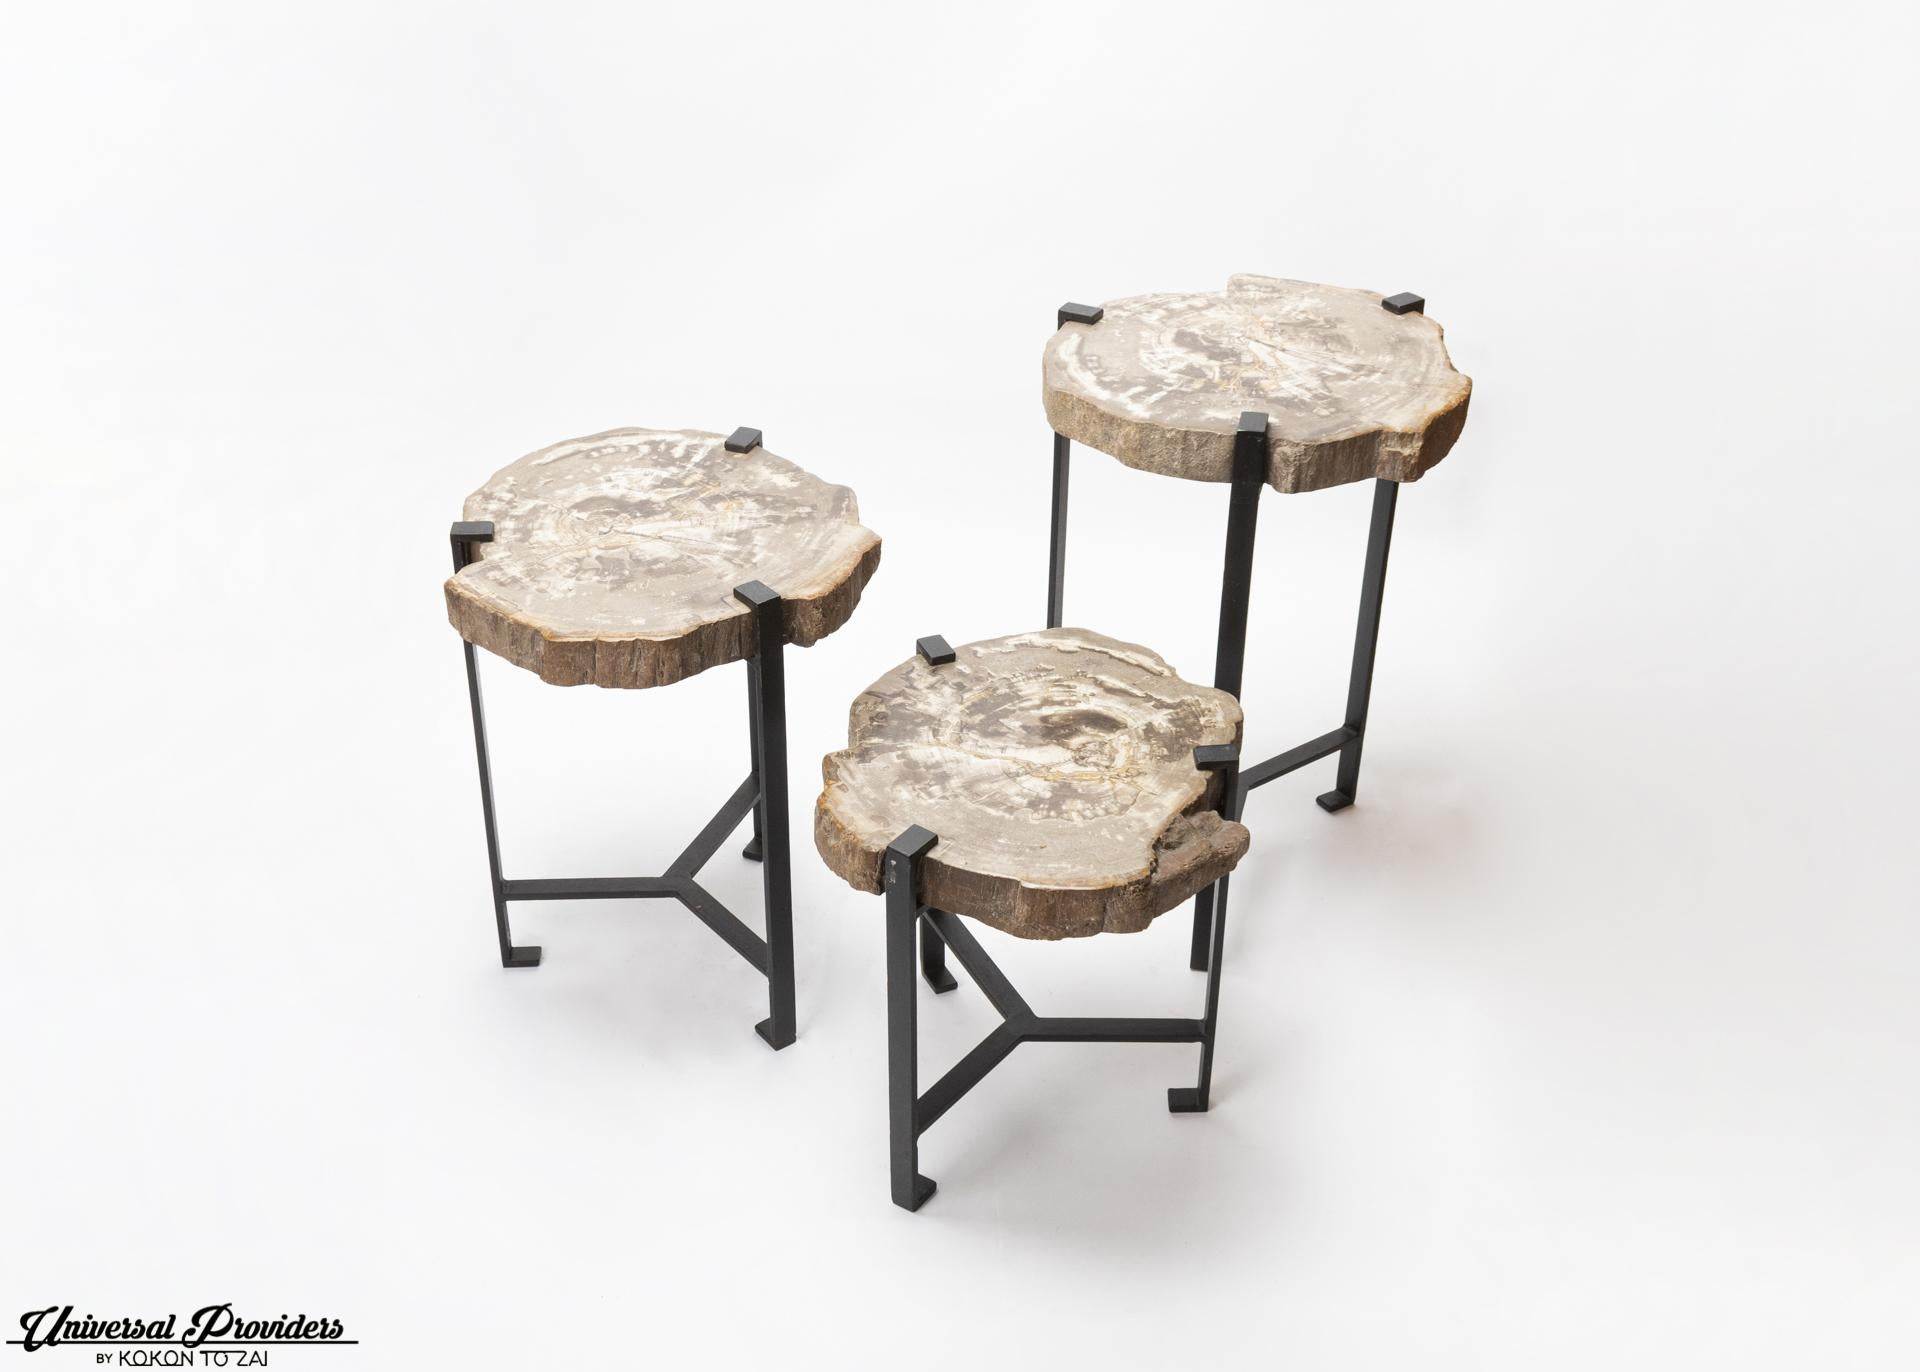 Petrified wood side table by Kokon To Zai.